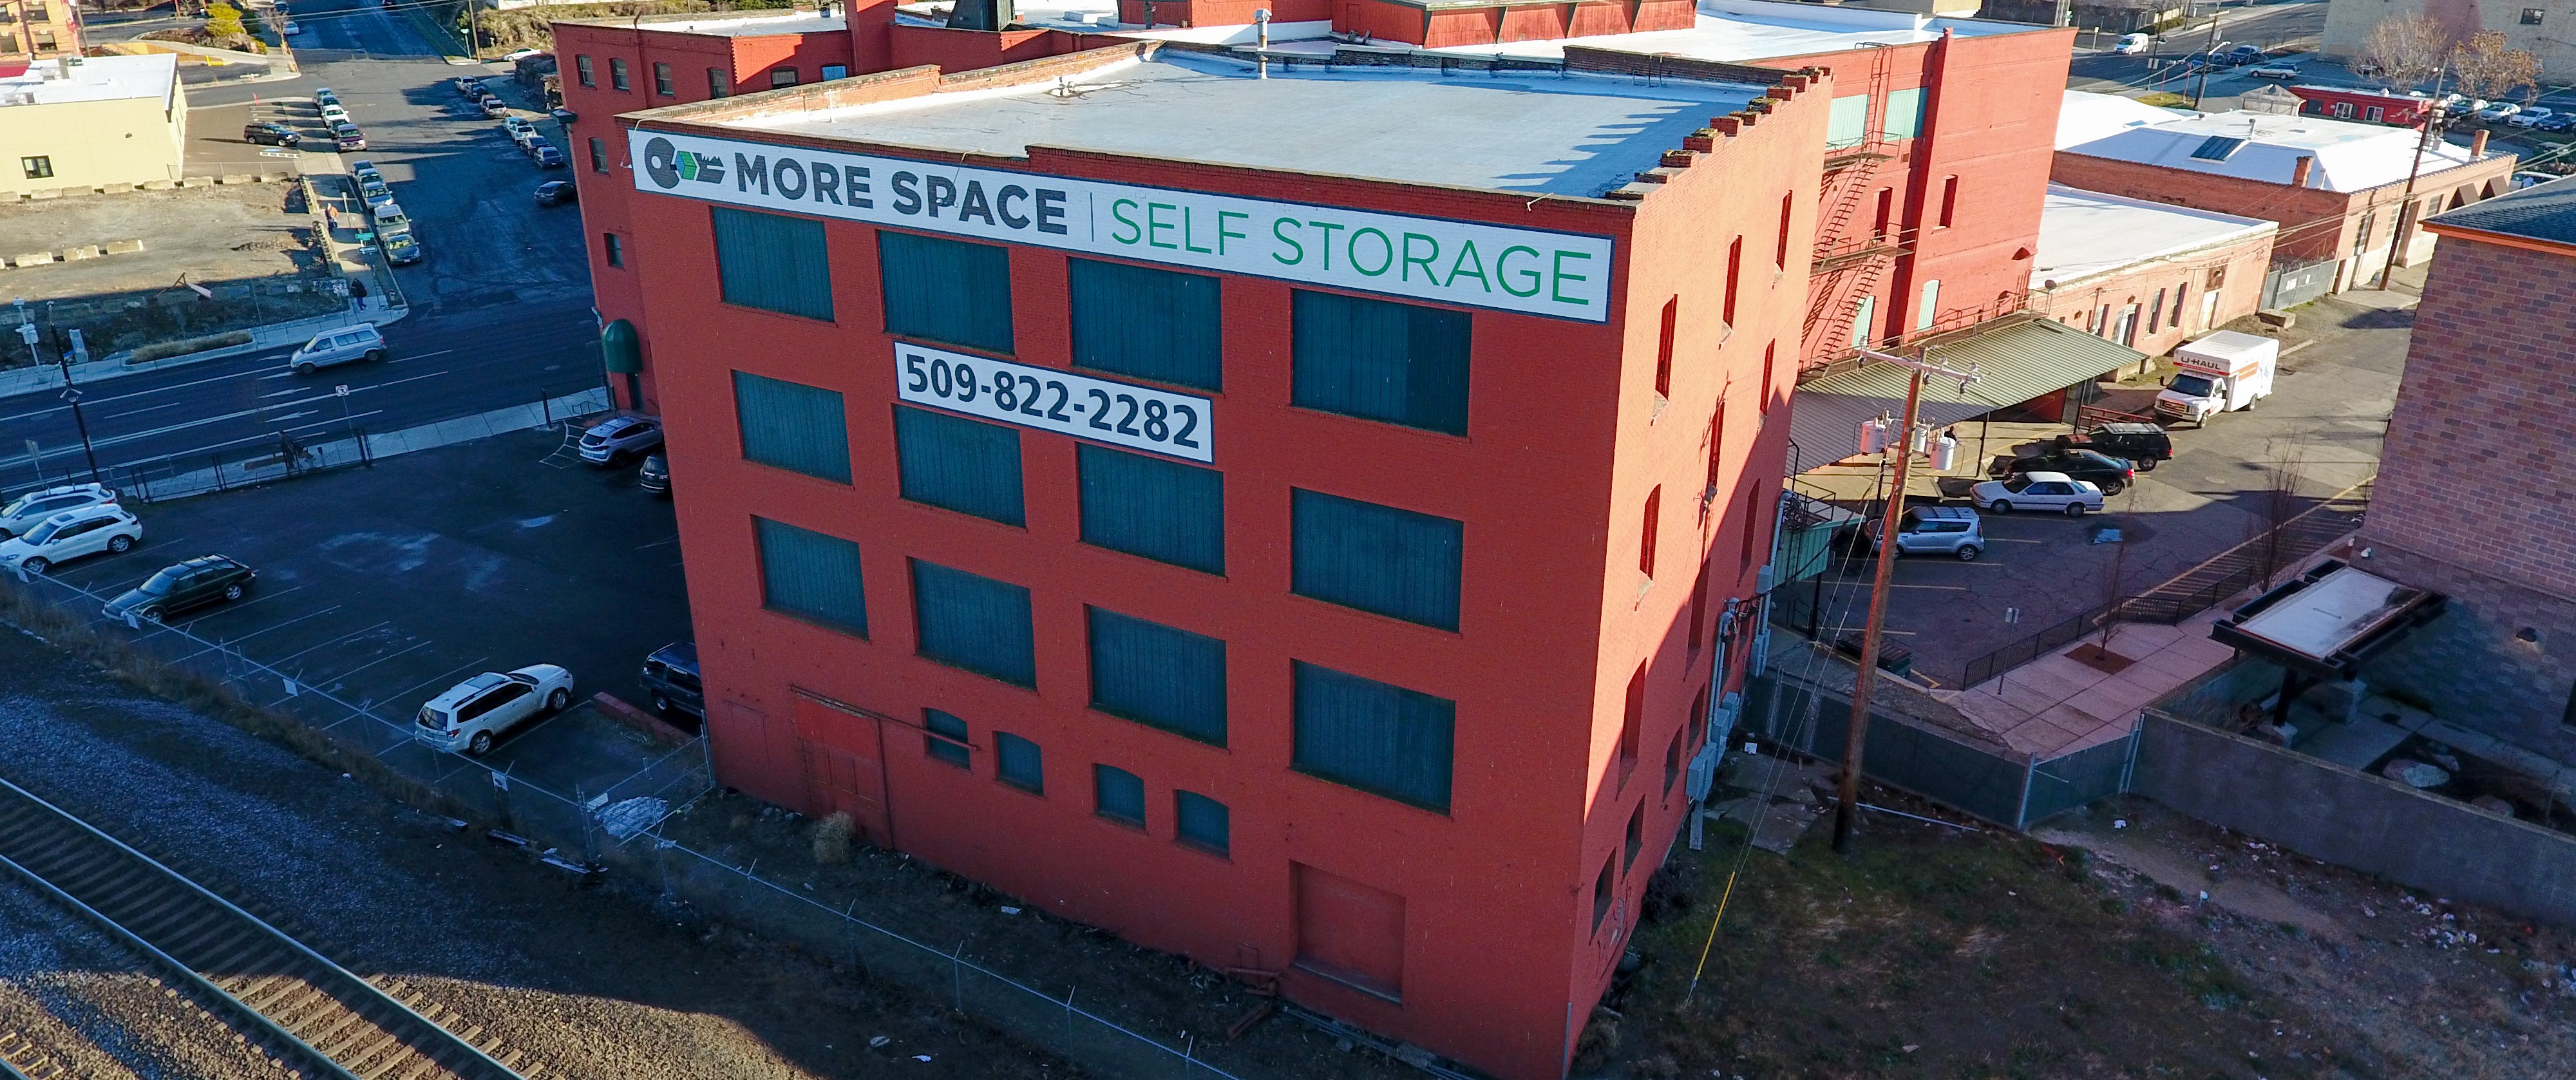 More Space Self Storage Spokane, WA